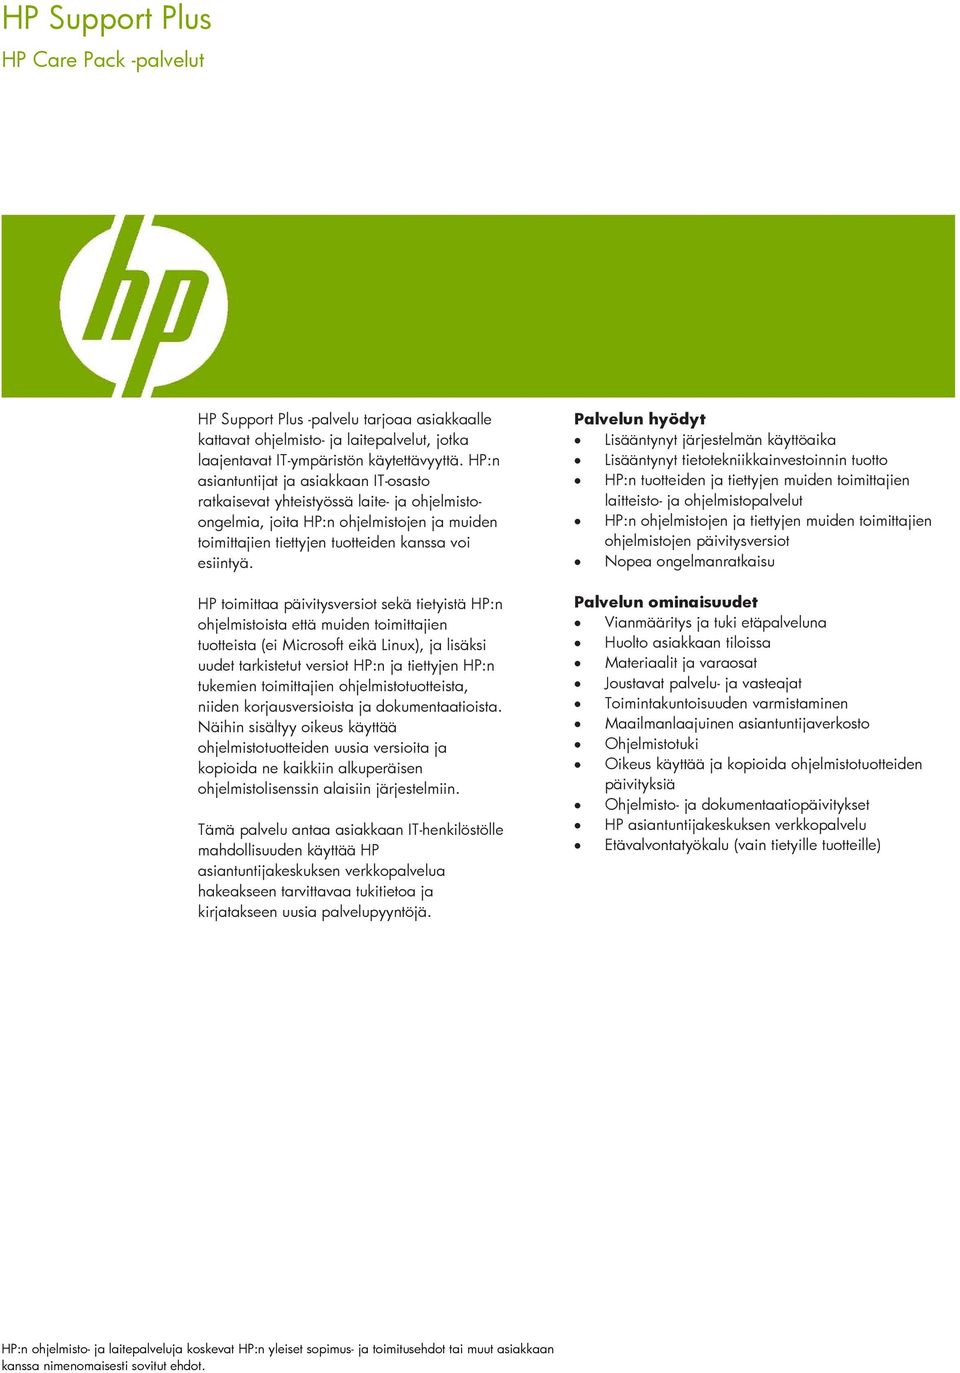 HP toimittaa päivitysversiot sekä tietyistä HP:n ohjelmistoista että muiden toimittajien tuotteista (ei Microsoft eikä Linux), ja lisäksi uudet tarkistetut versiot HP:n ja tiettyjen HP:n tukemien